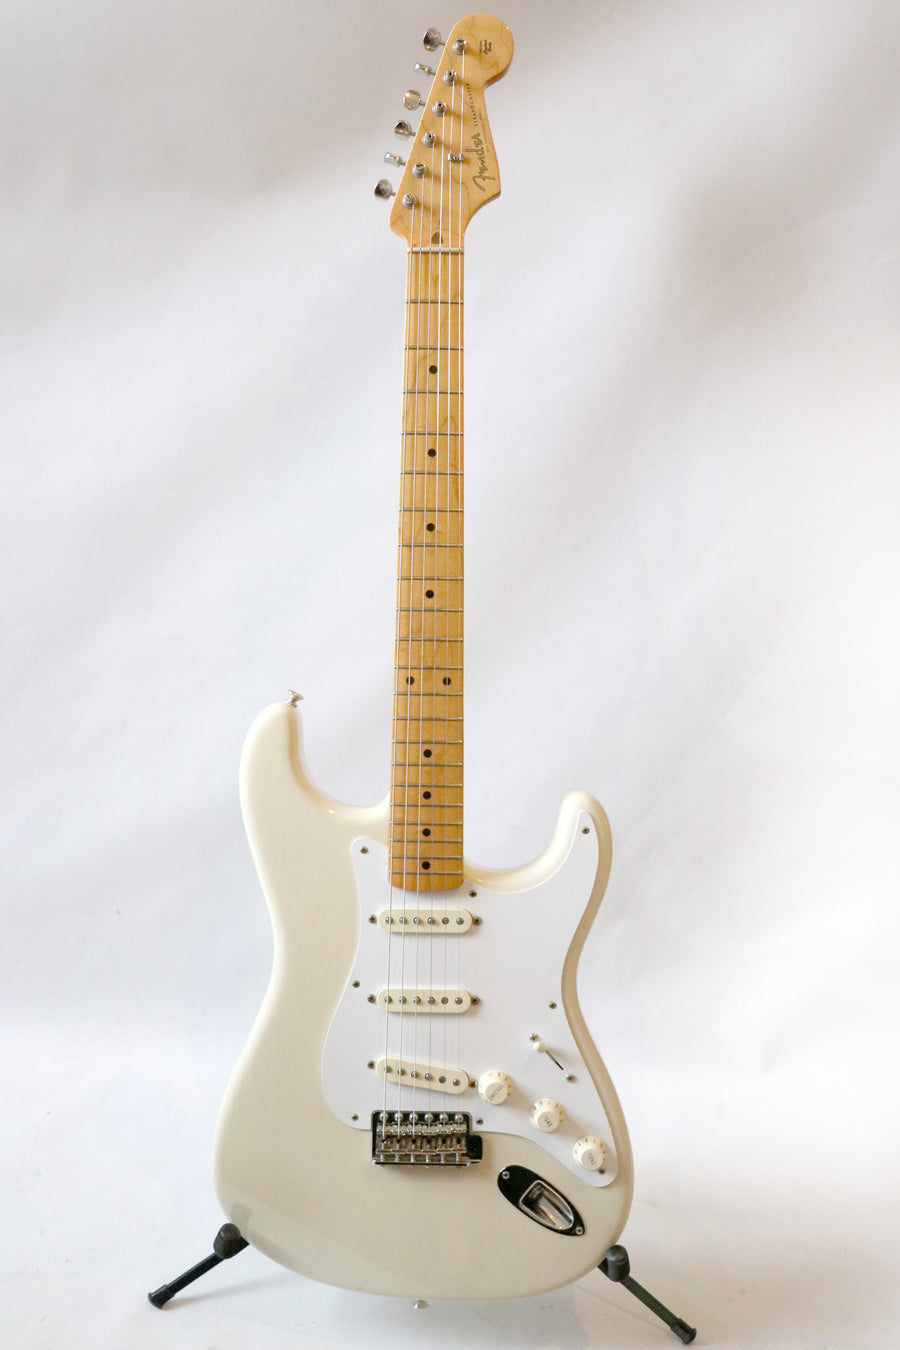 Fender 1957 American Vintage Stratocaster 2008